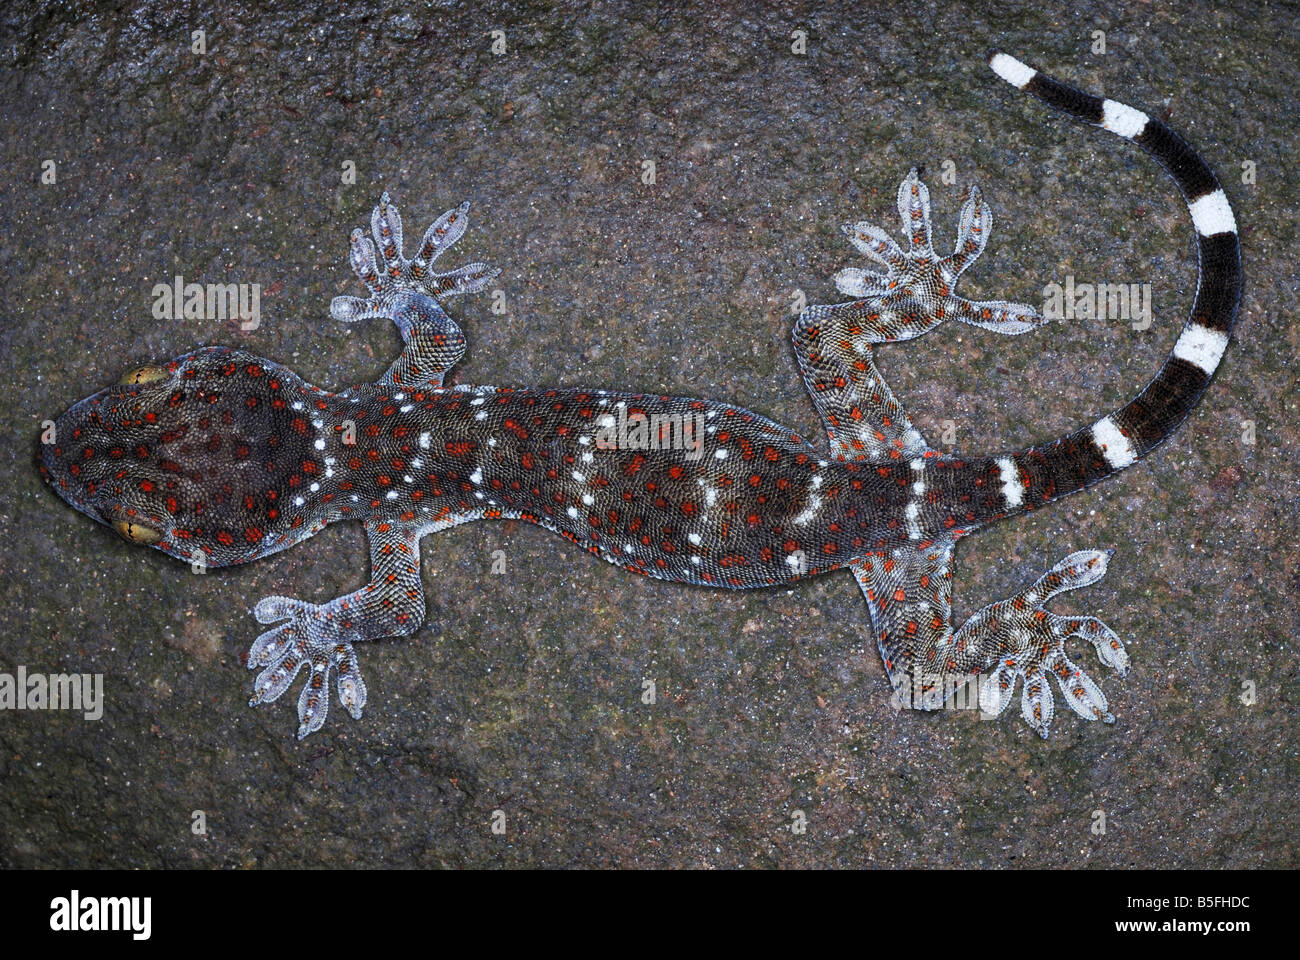 Tucktoo Gecko. Eine große arboreal Gecko, die häufig die Baumhöhlen Wohnraums angesehen werden. Assam. Indien Stockfoto